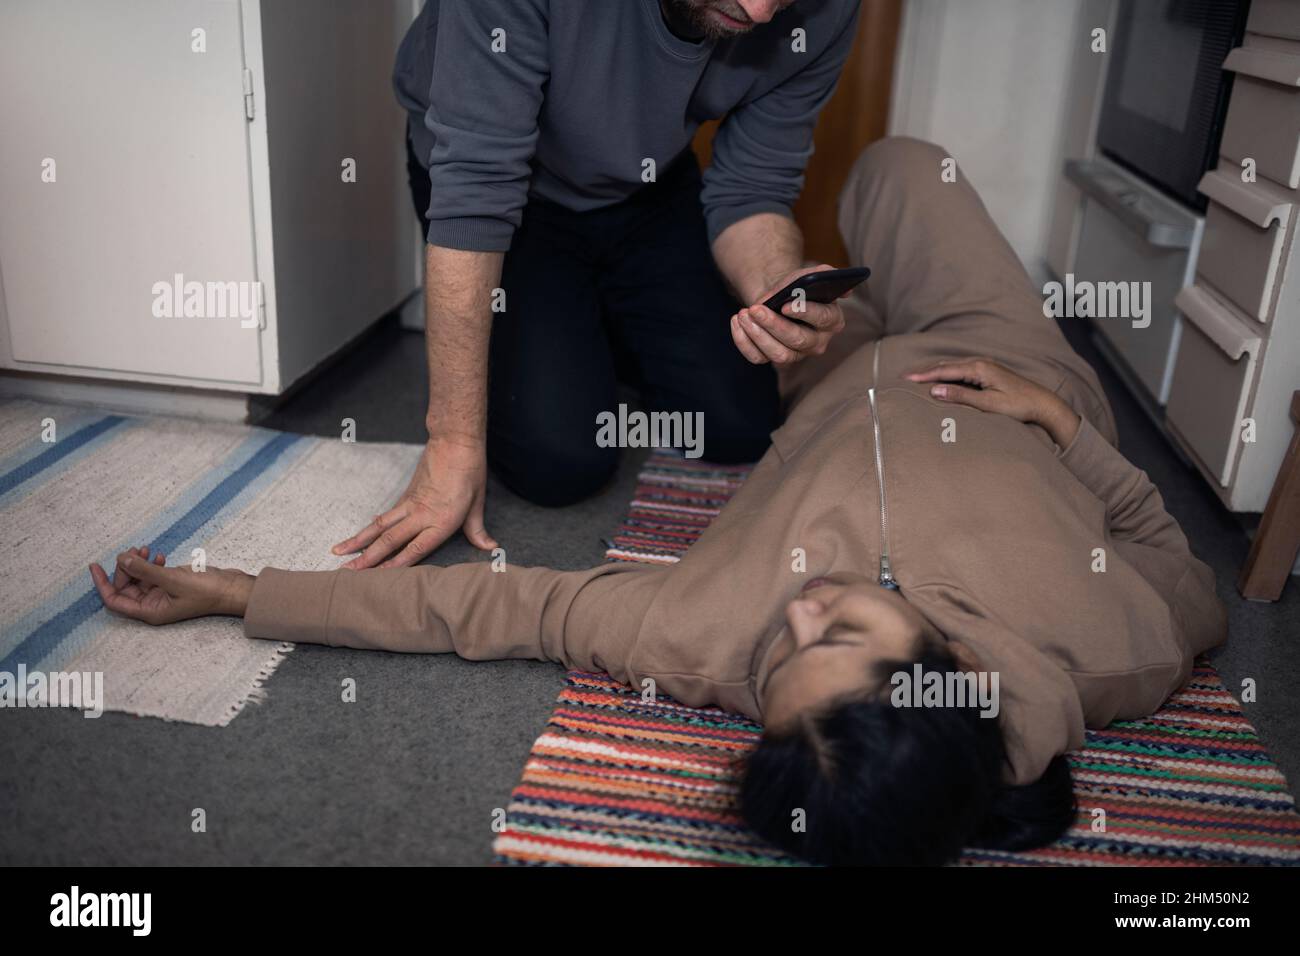 Uomo che chiede l'ambulanza per la donna inconscia in shock medico Foto Stock